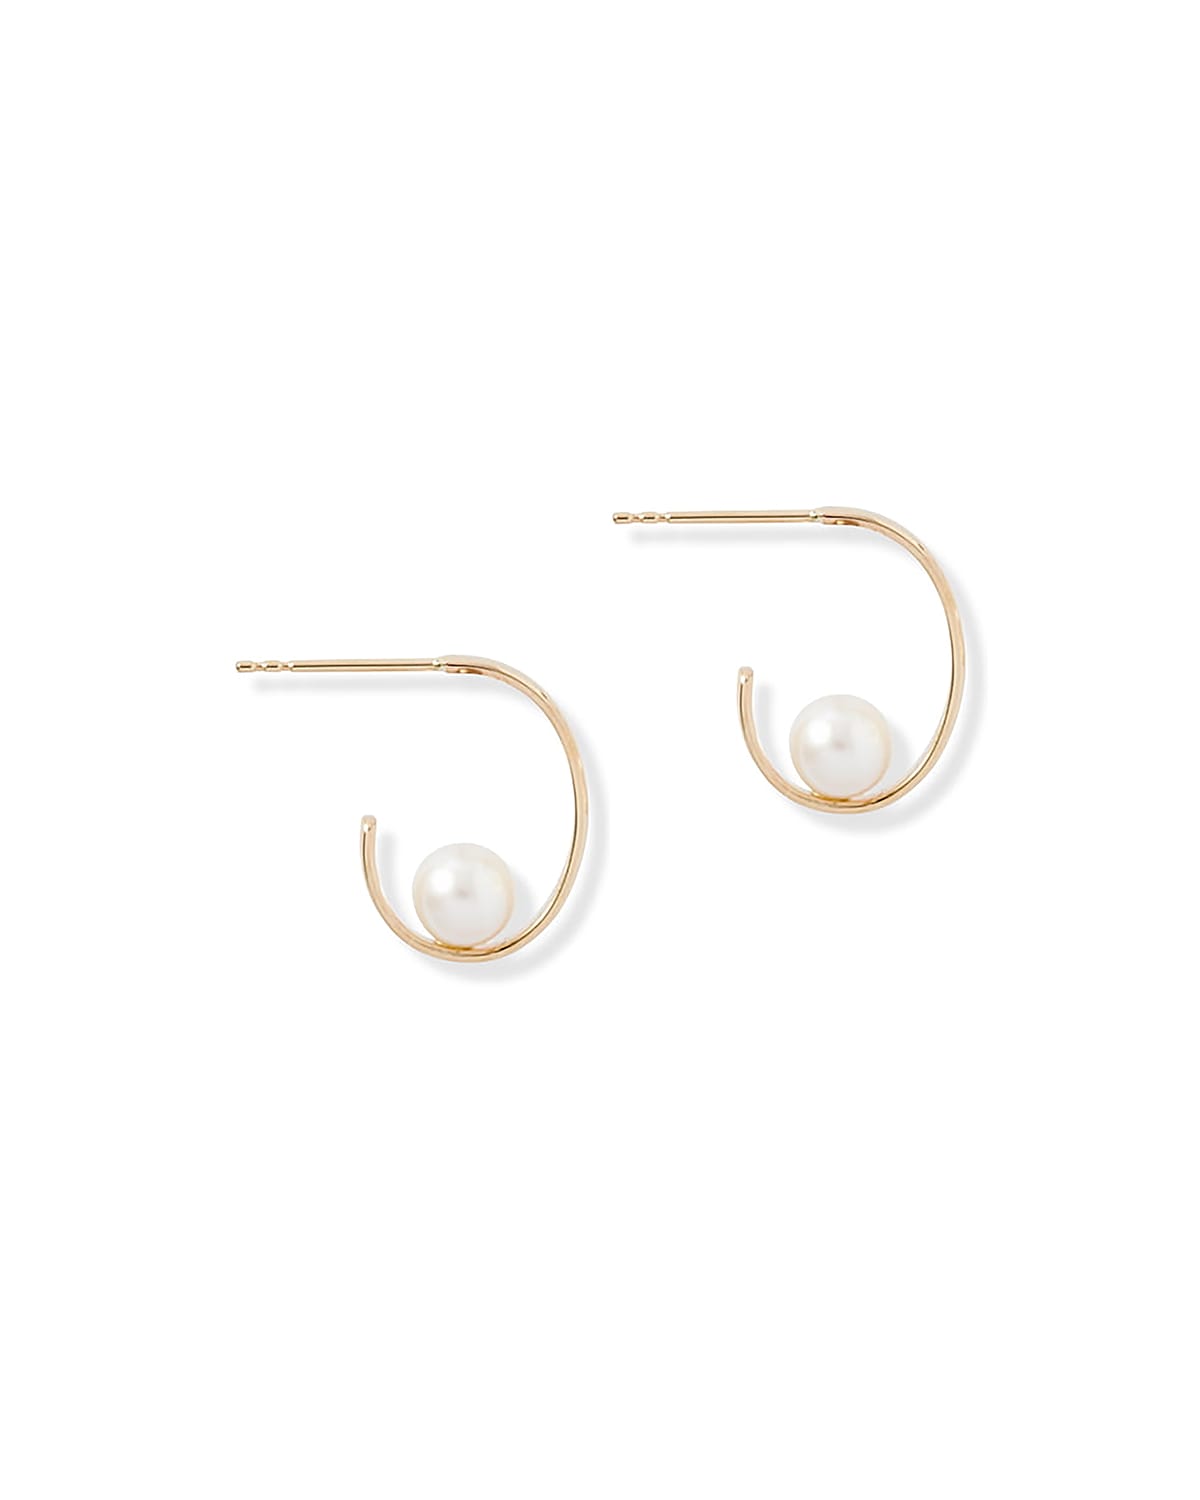 Poppy Finch Oval Pearl Earrings